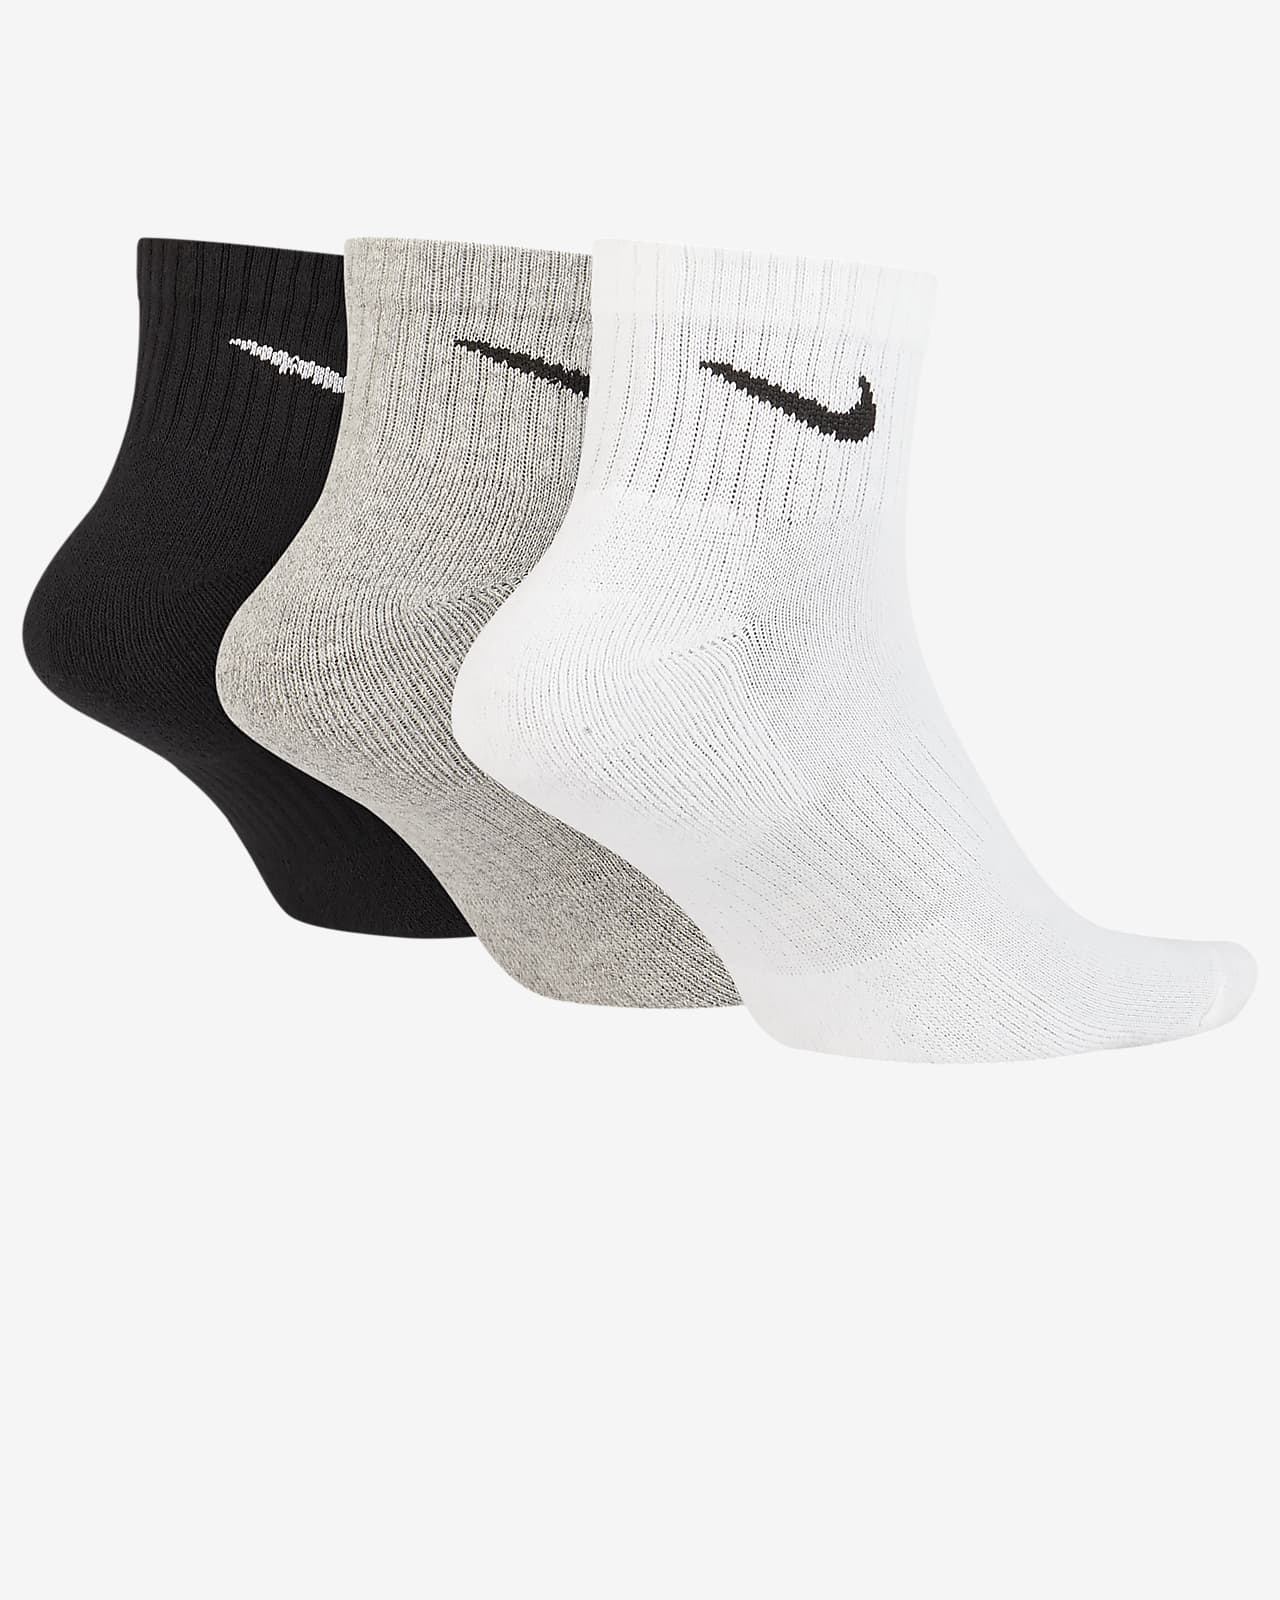 nike socks sale canada